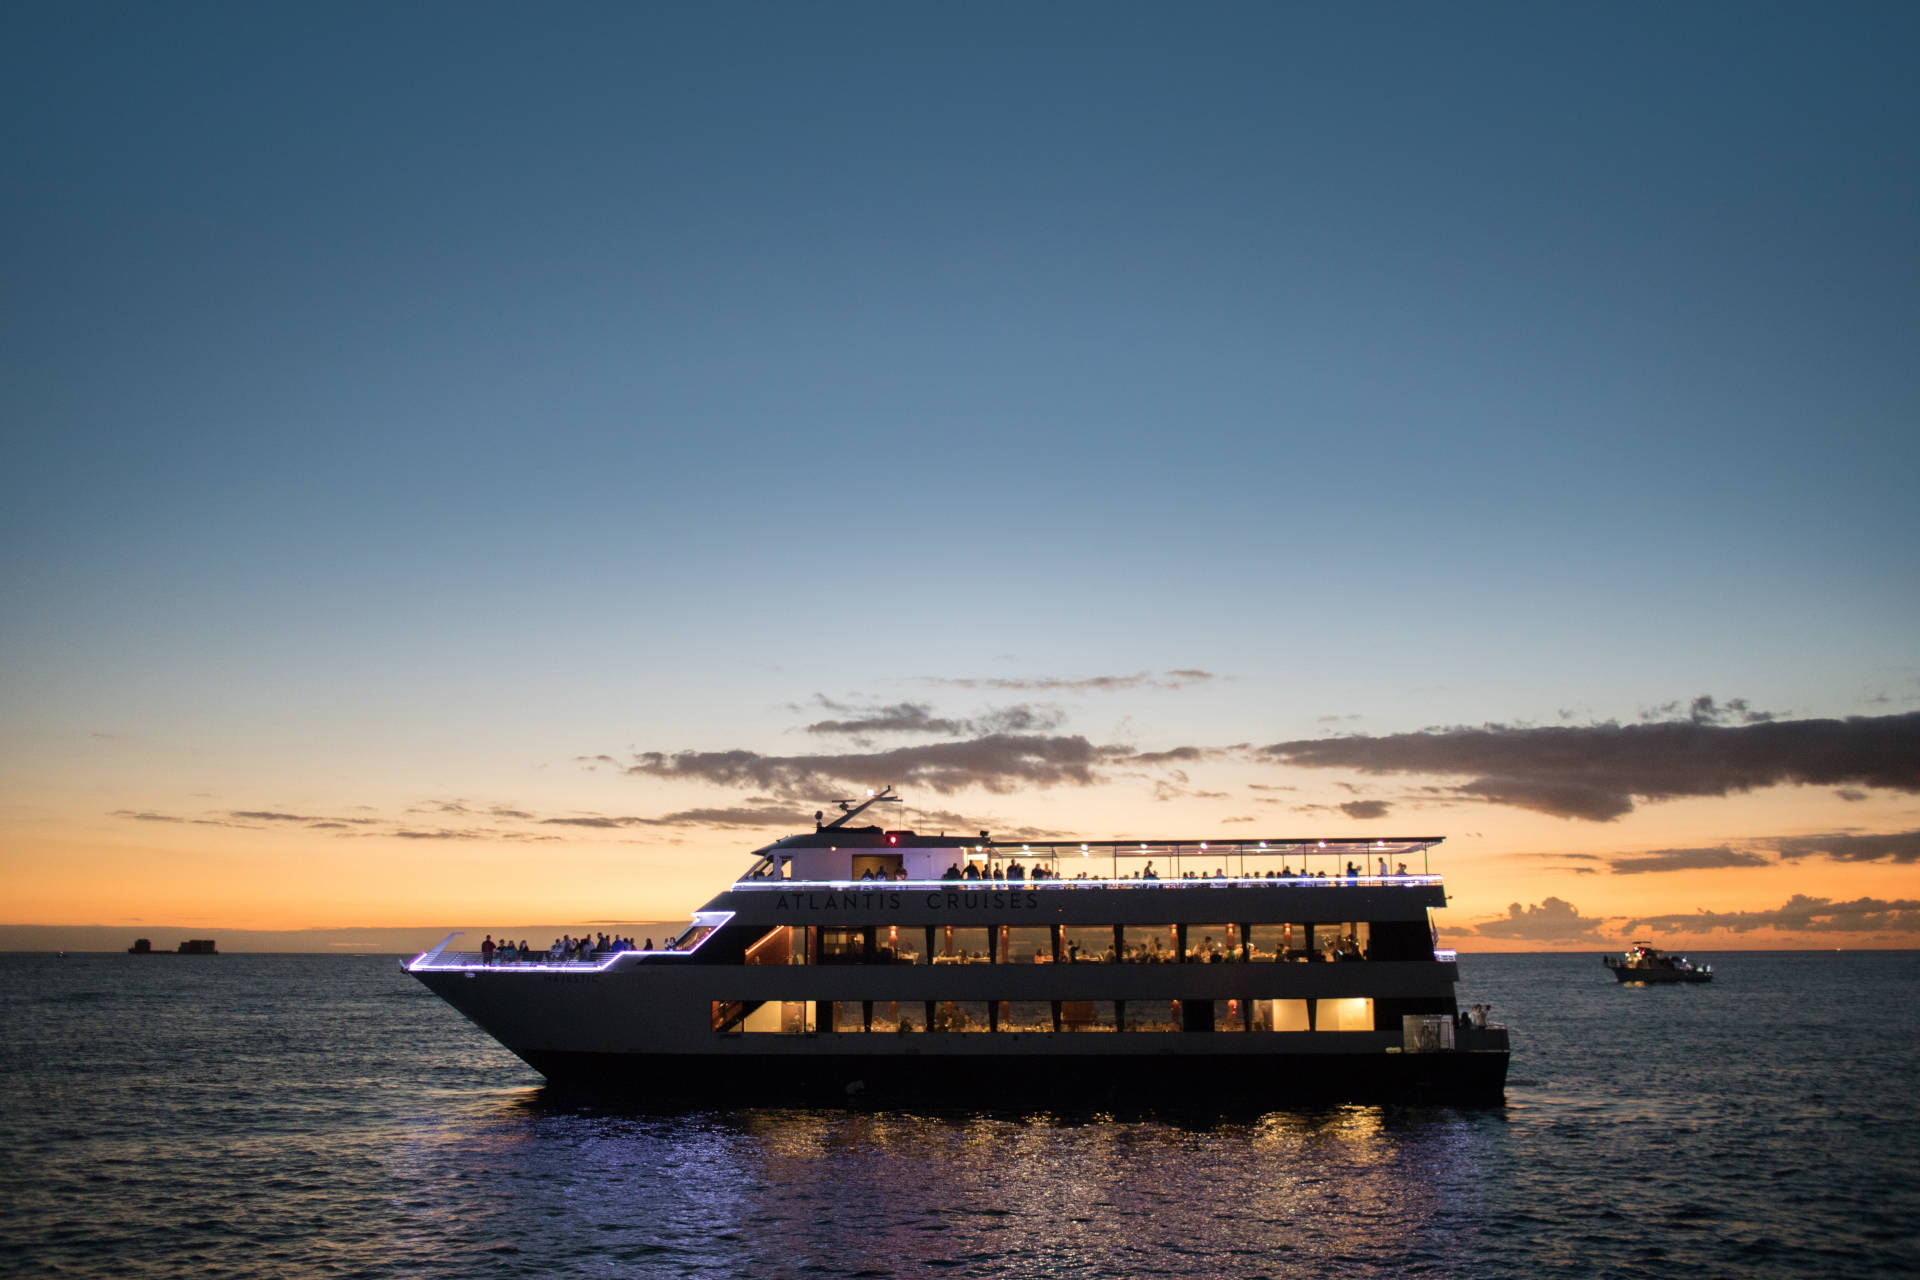 waikiki sunset cocktail cruise atlantis